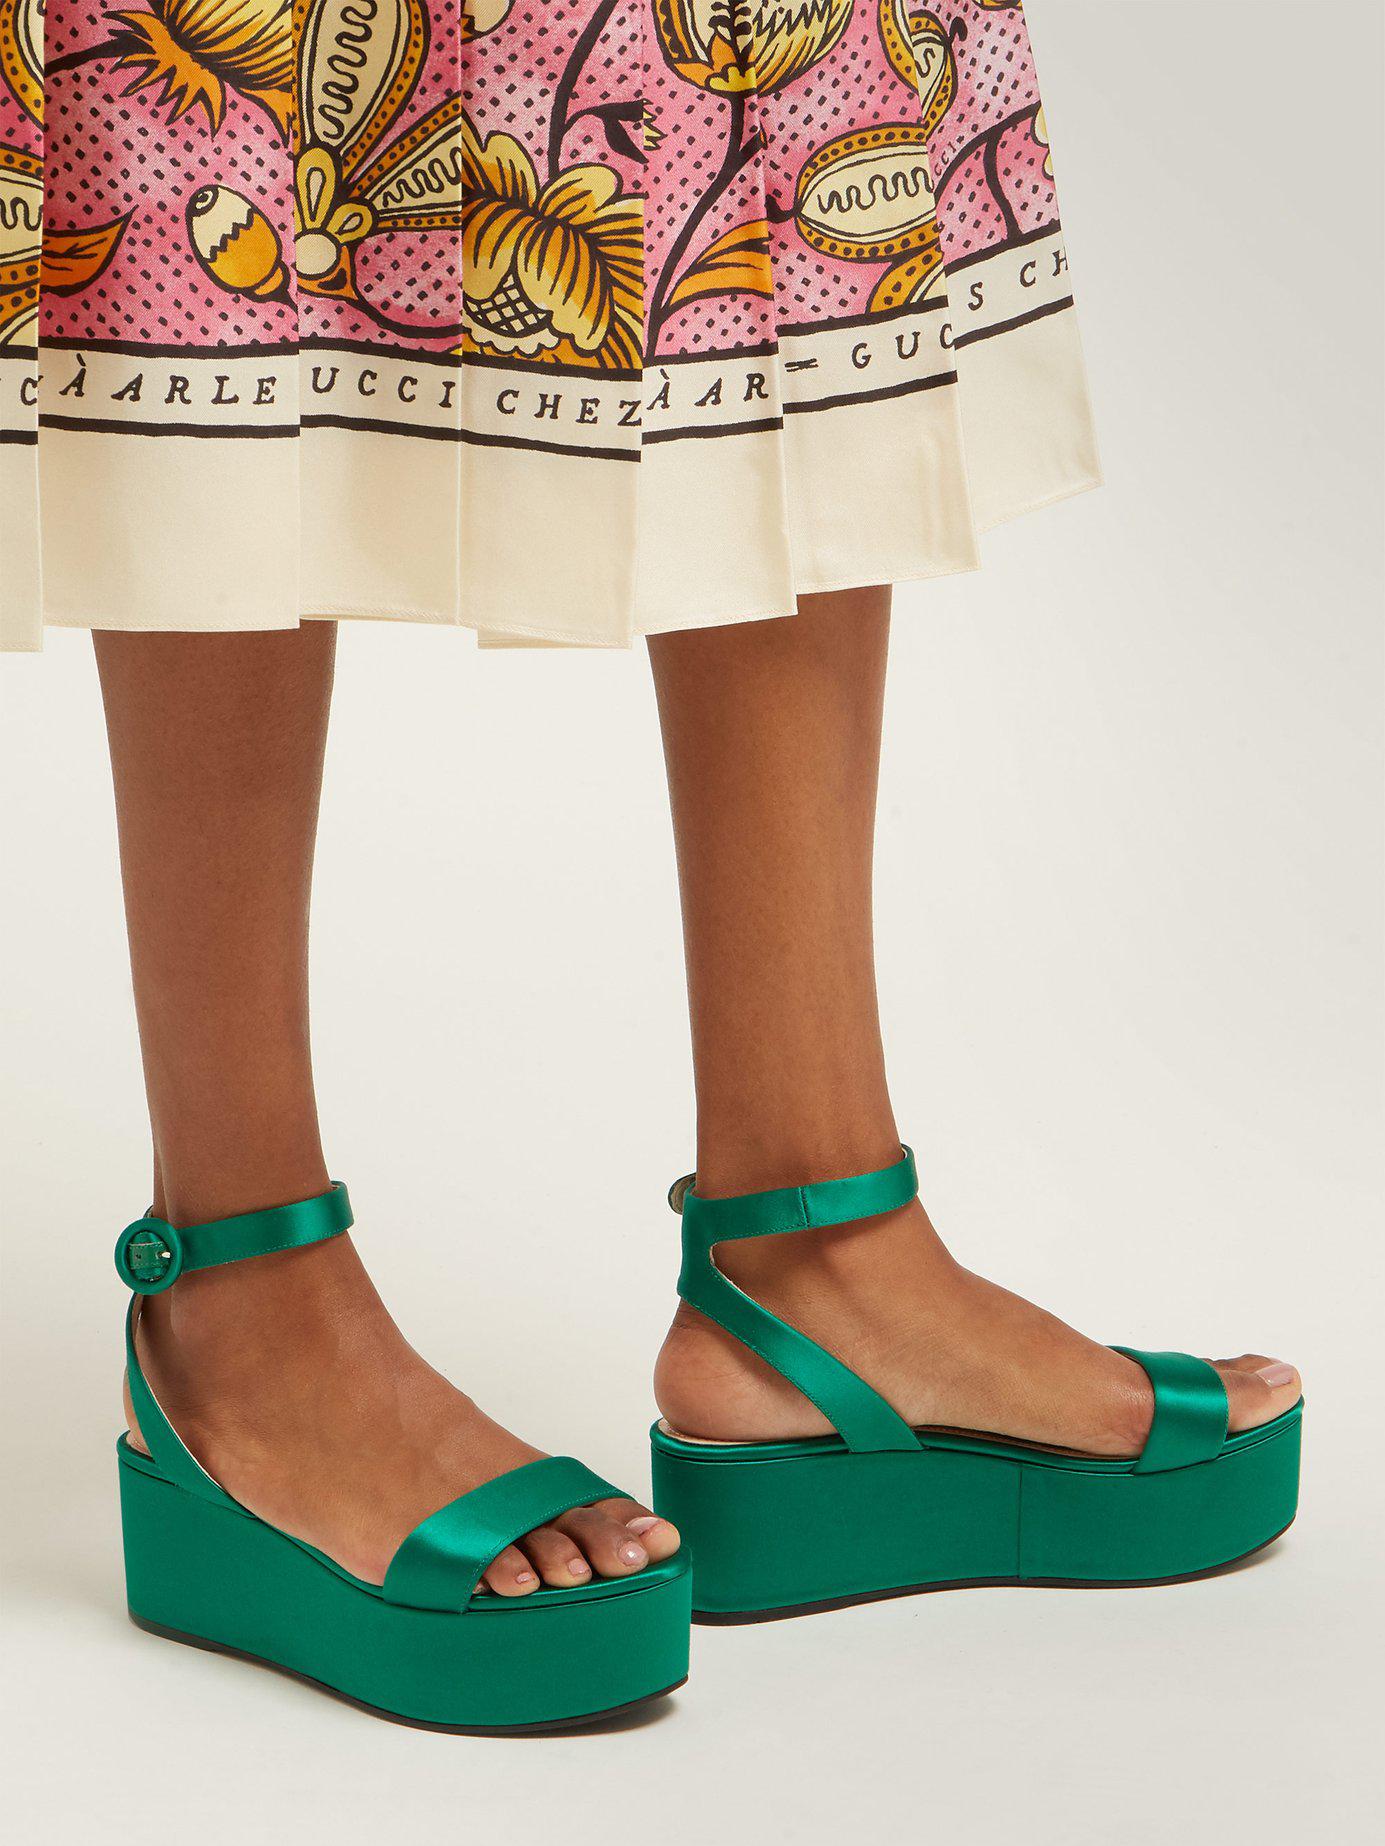 Prada Platform Satin Sandals in Green - Lyst